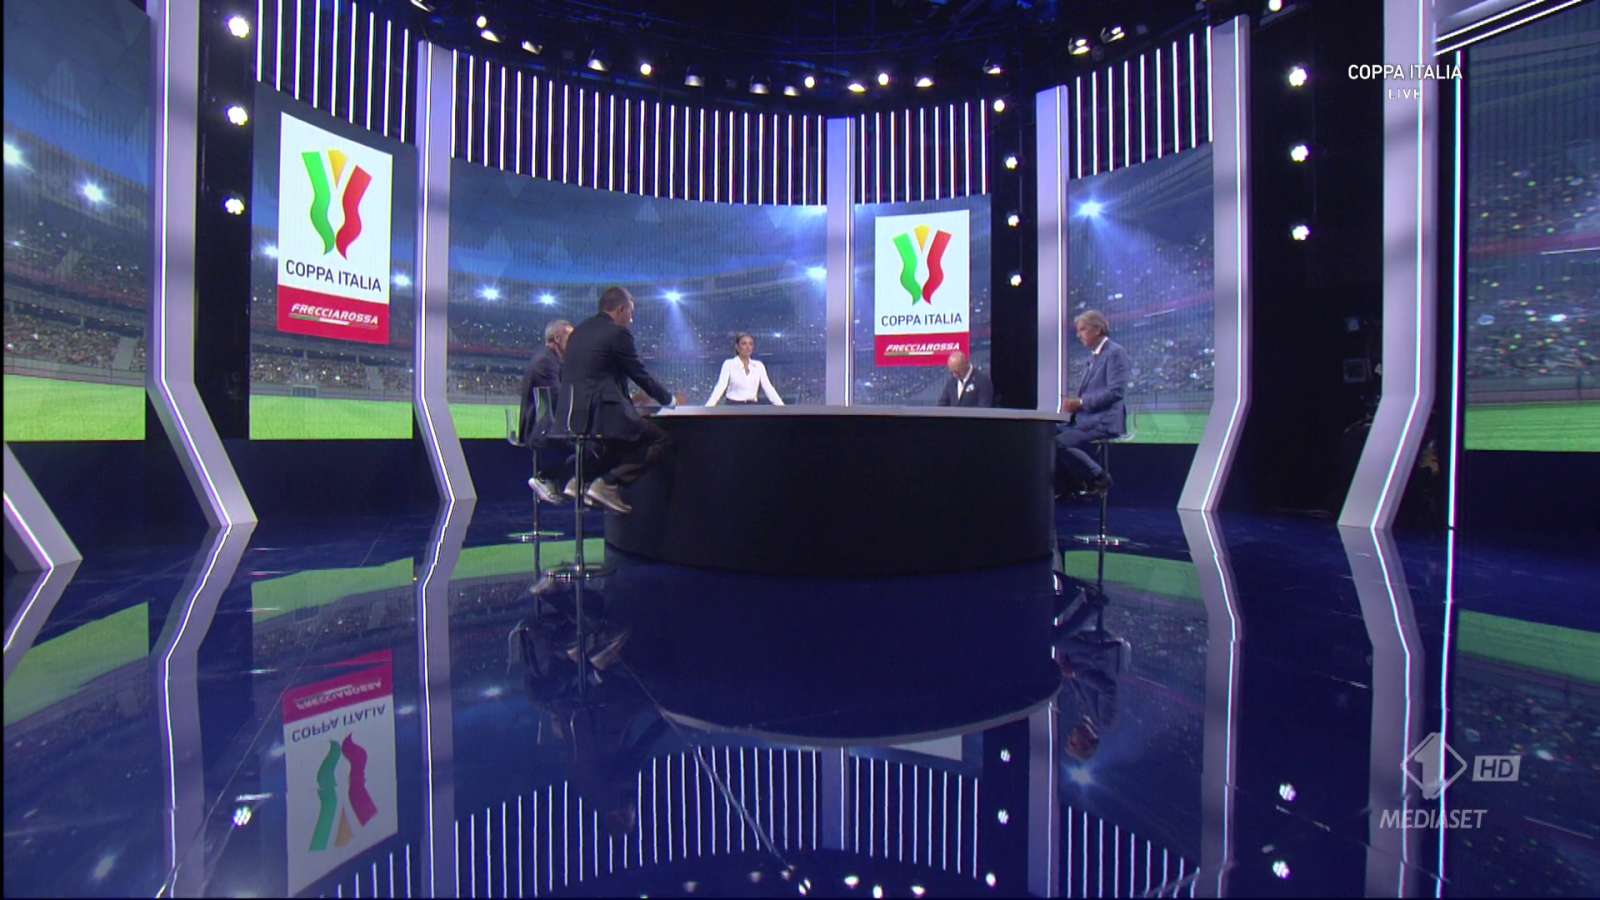 Coppa Italia Quarti di Finale 2022/23 - Programma e Telecronisti Esclusiva Mediaset